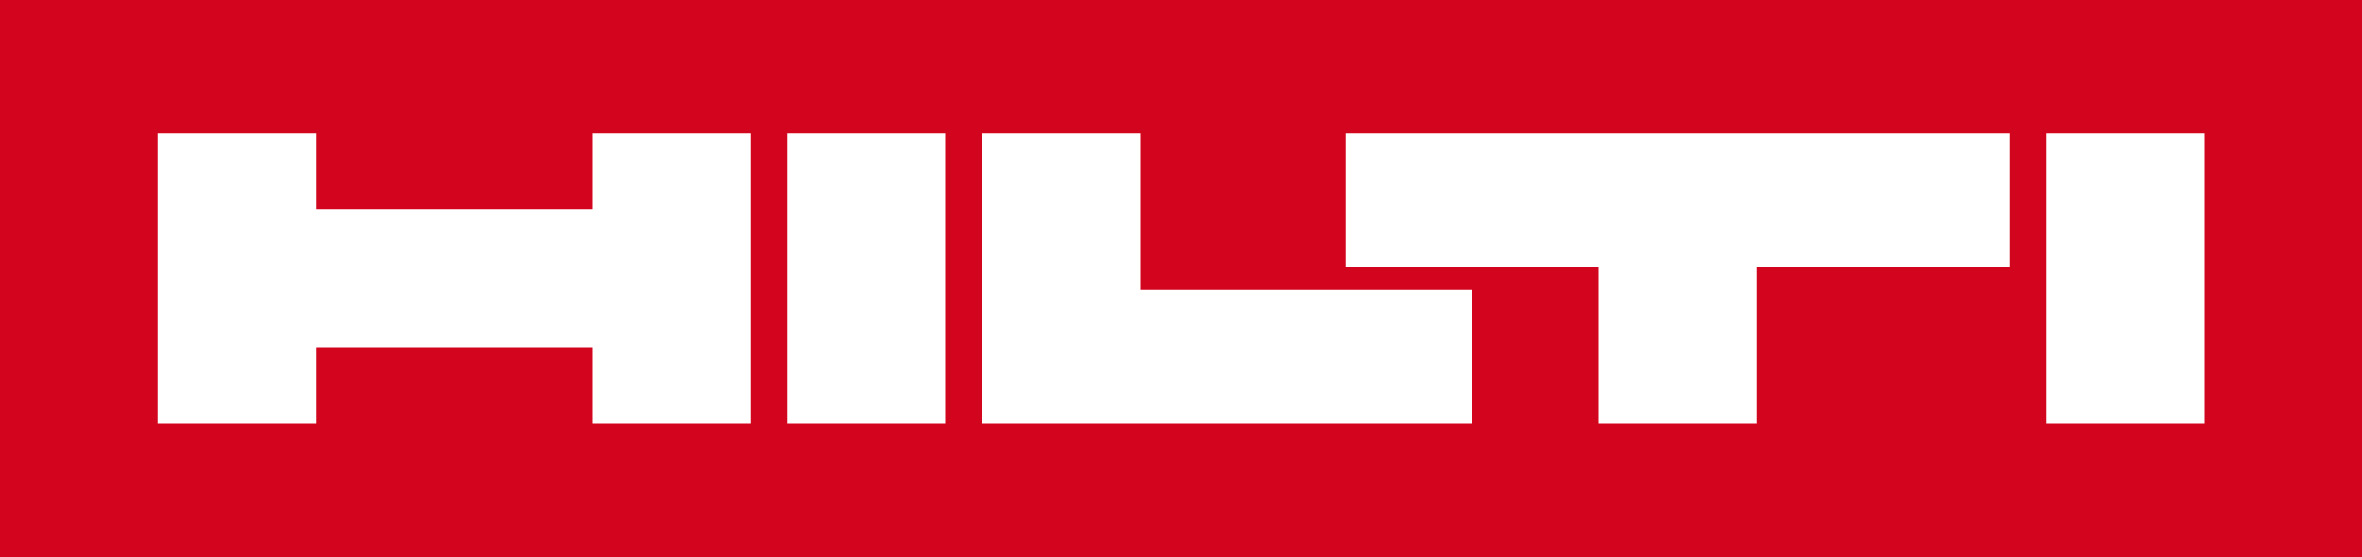 Hilti Logo red masterfile 2016 sRGB